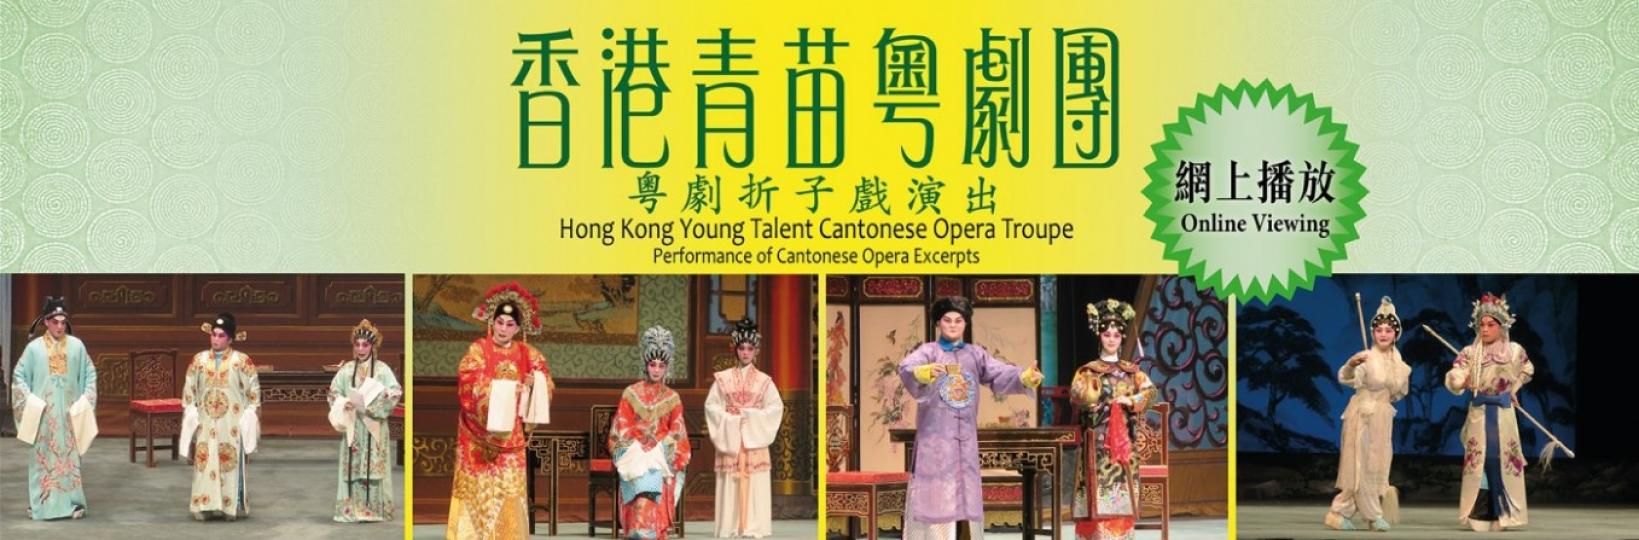 康文署舉辦免費線上節目「香港青苗粵劇團－－粤劇折子戲演出」